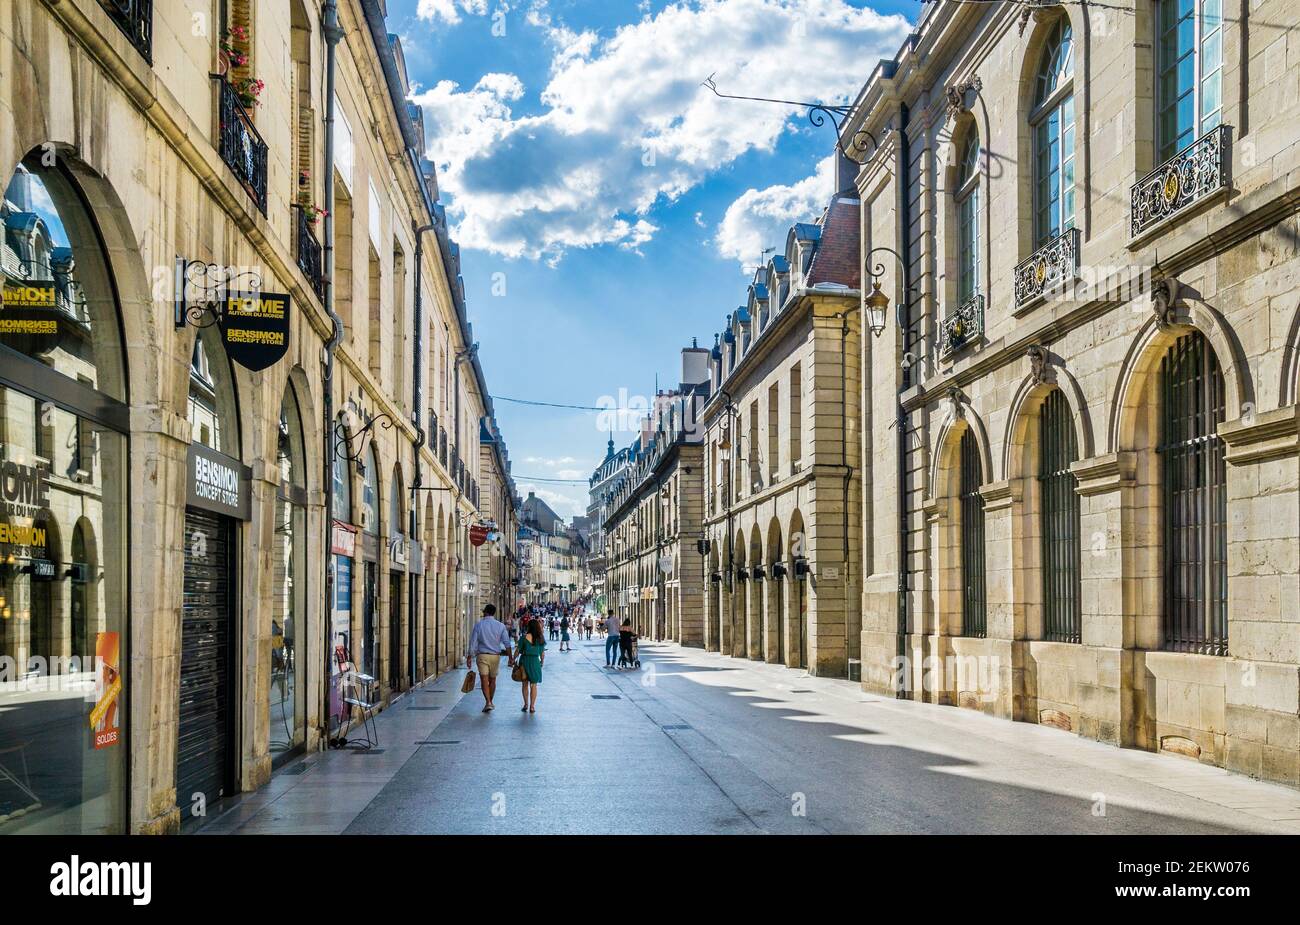 Façades majestueuses de la prestigieuse rue de la liberté à Dijon, Bourgogne, Côte-d'Or, Bourgogne-France-Comté, France Banque D'Images